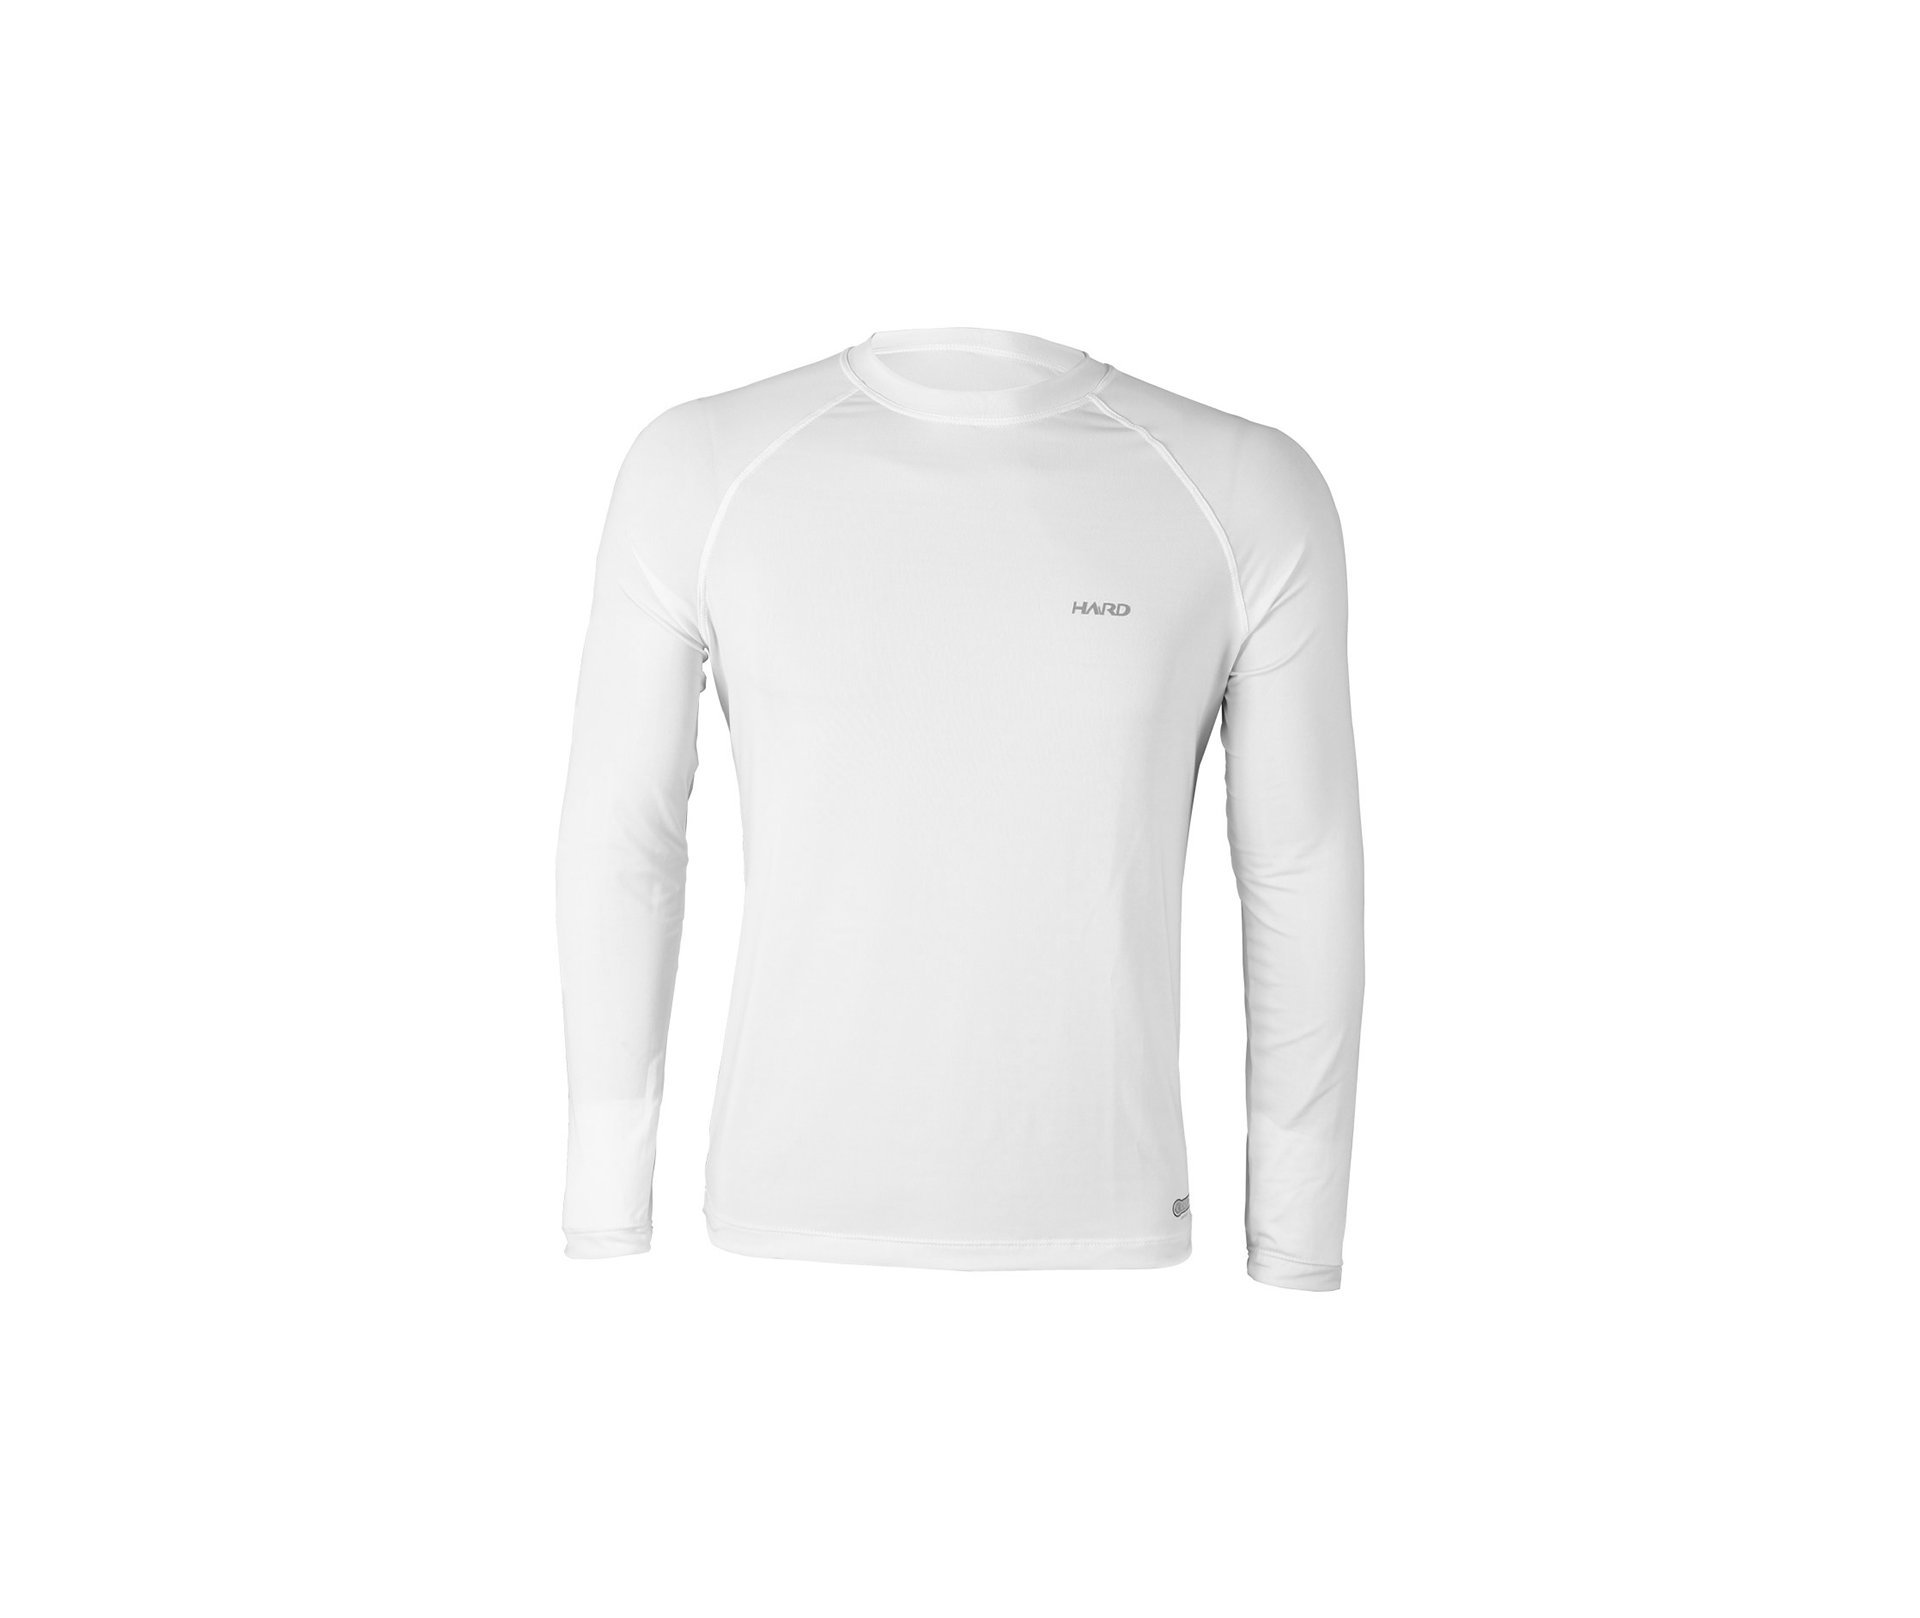 Camiseta Nanotec M.longa Fresh50 Branco Leggerissimo - Hard - P